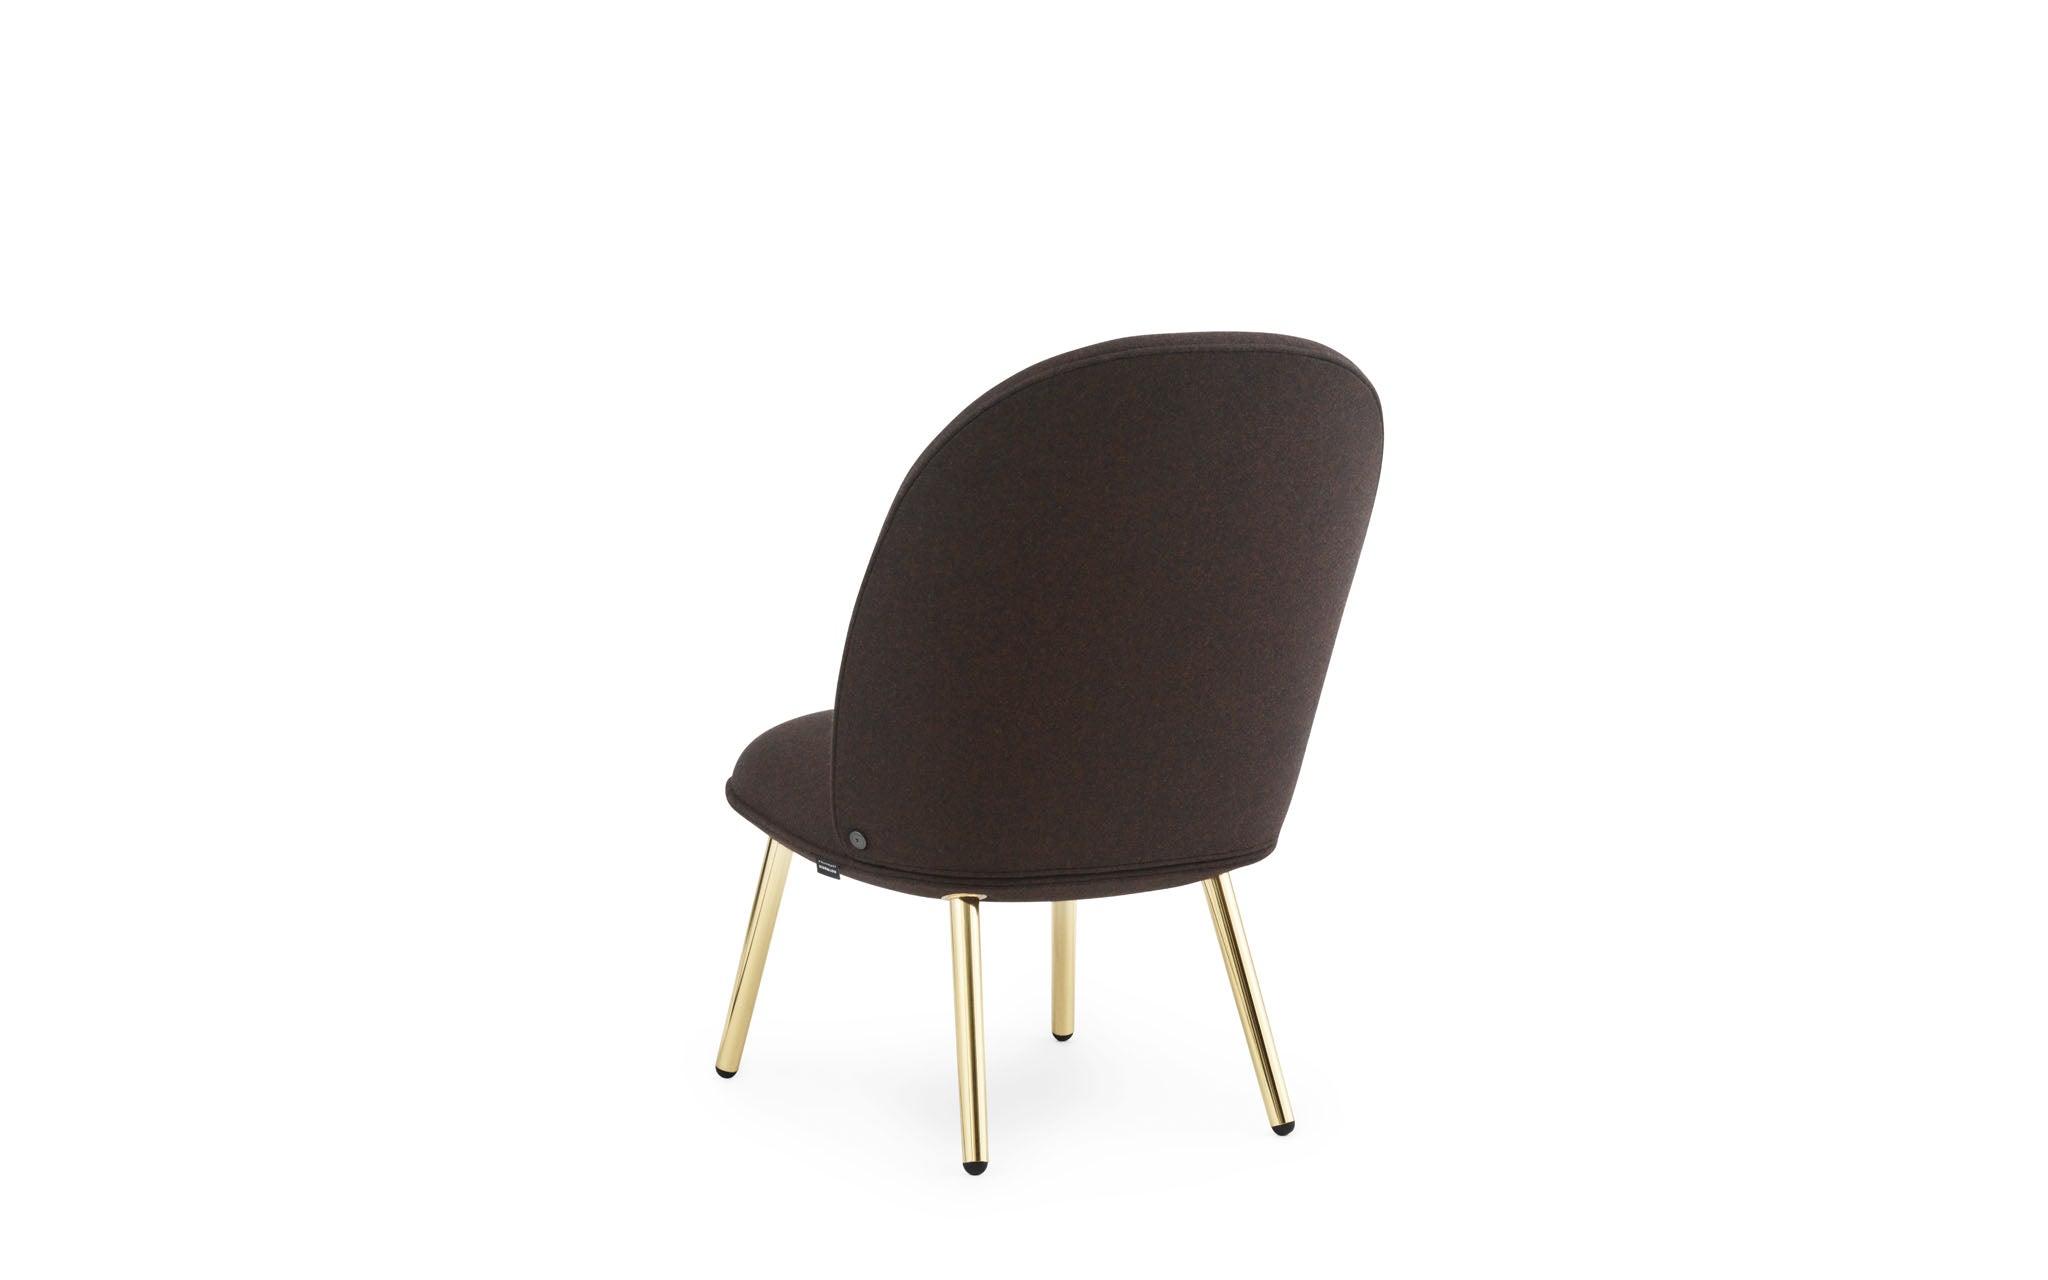 Ace Lounge-Sessel, gepolstert - KAQTU Design